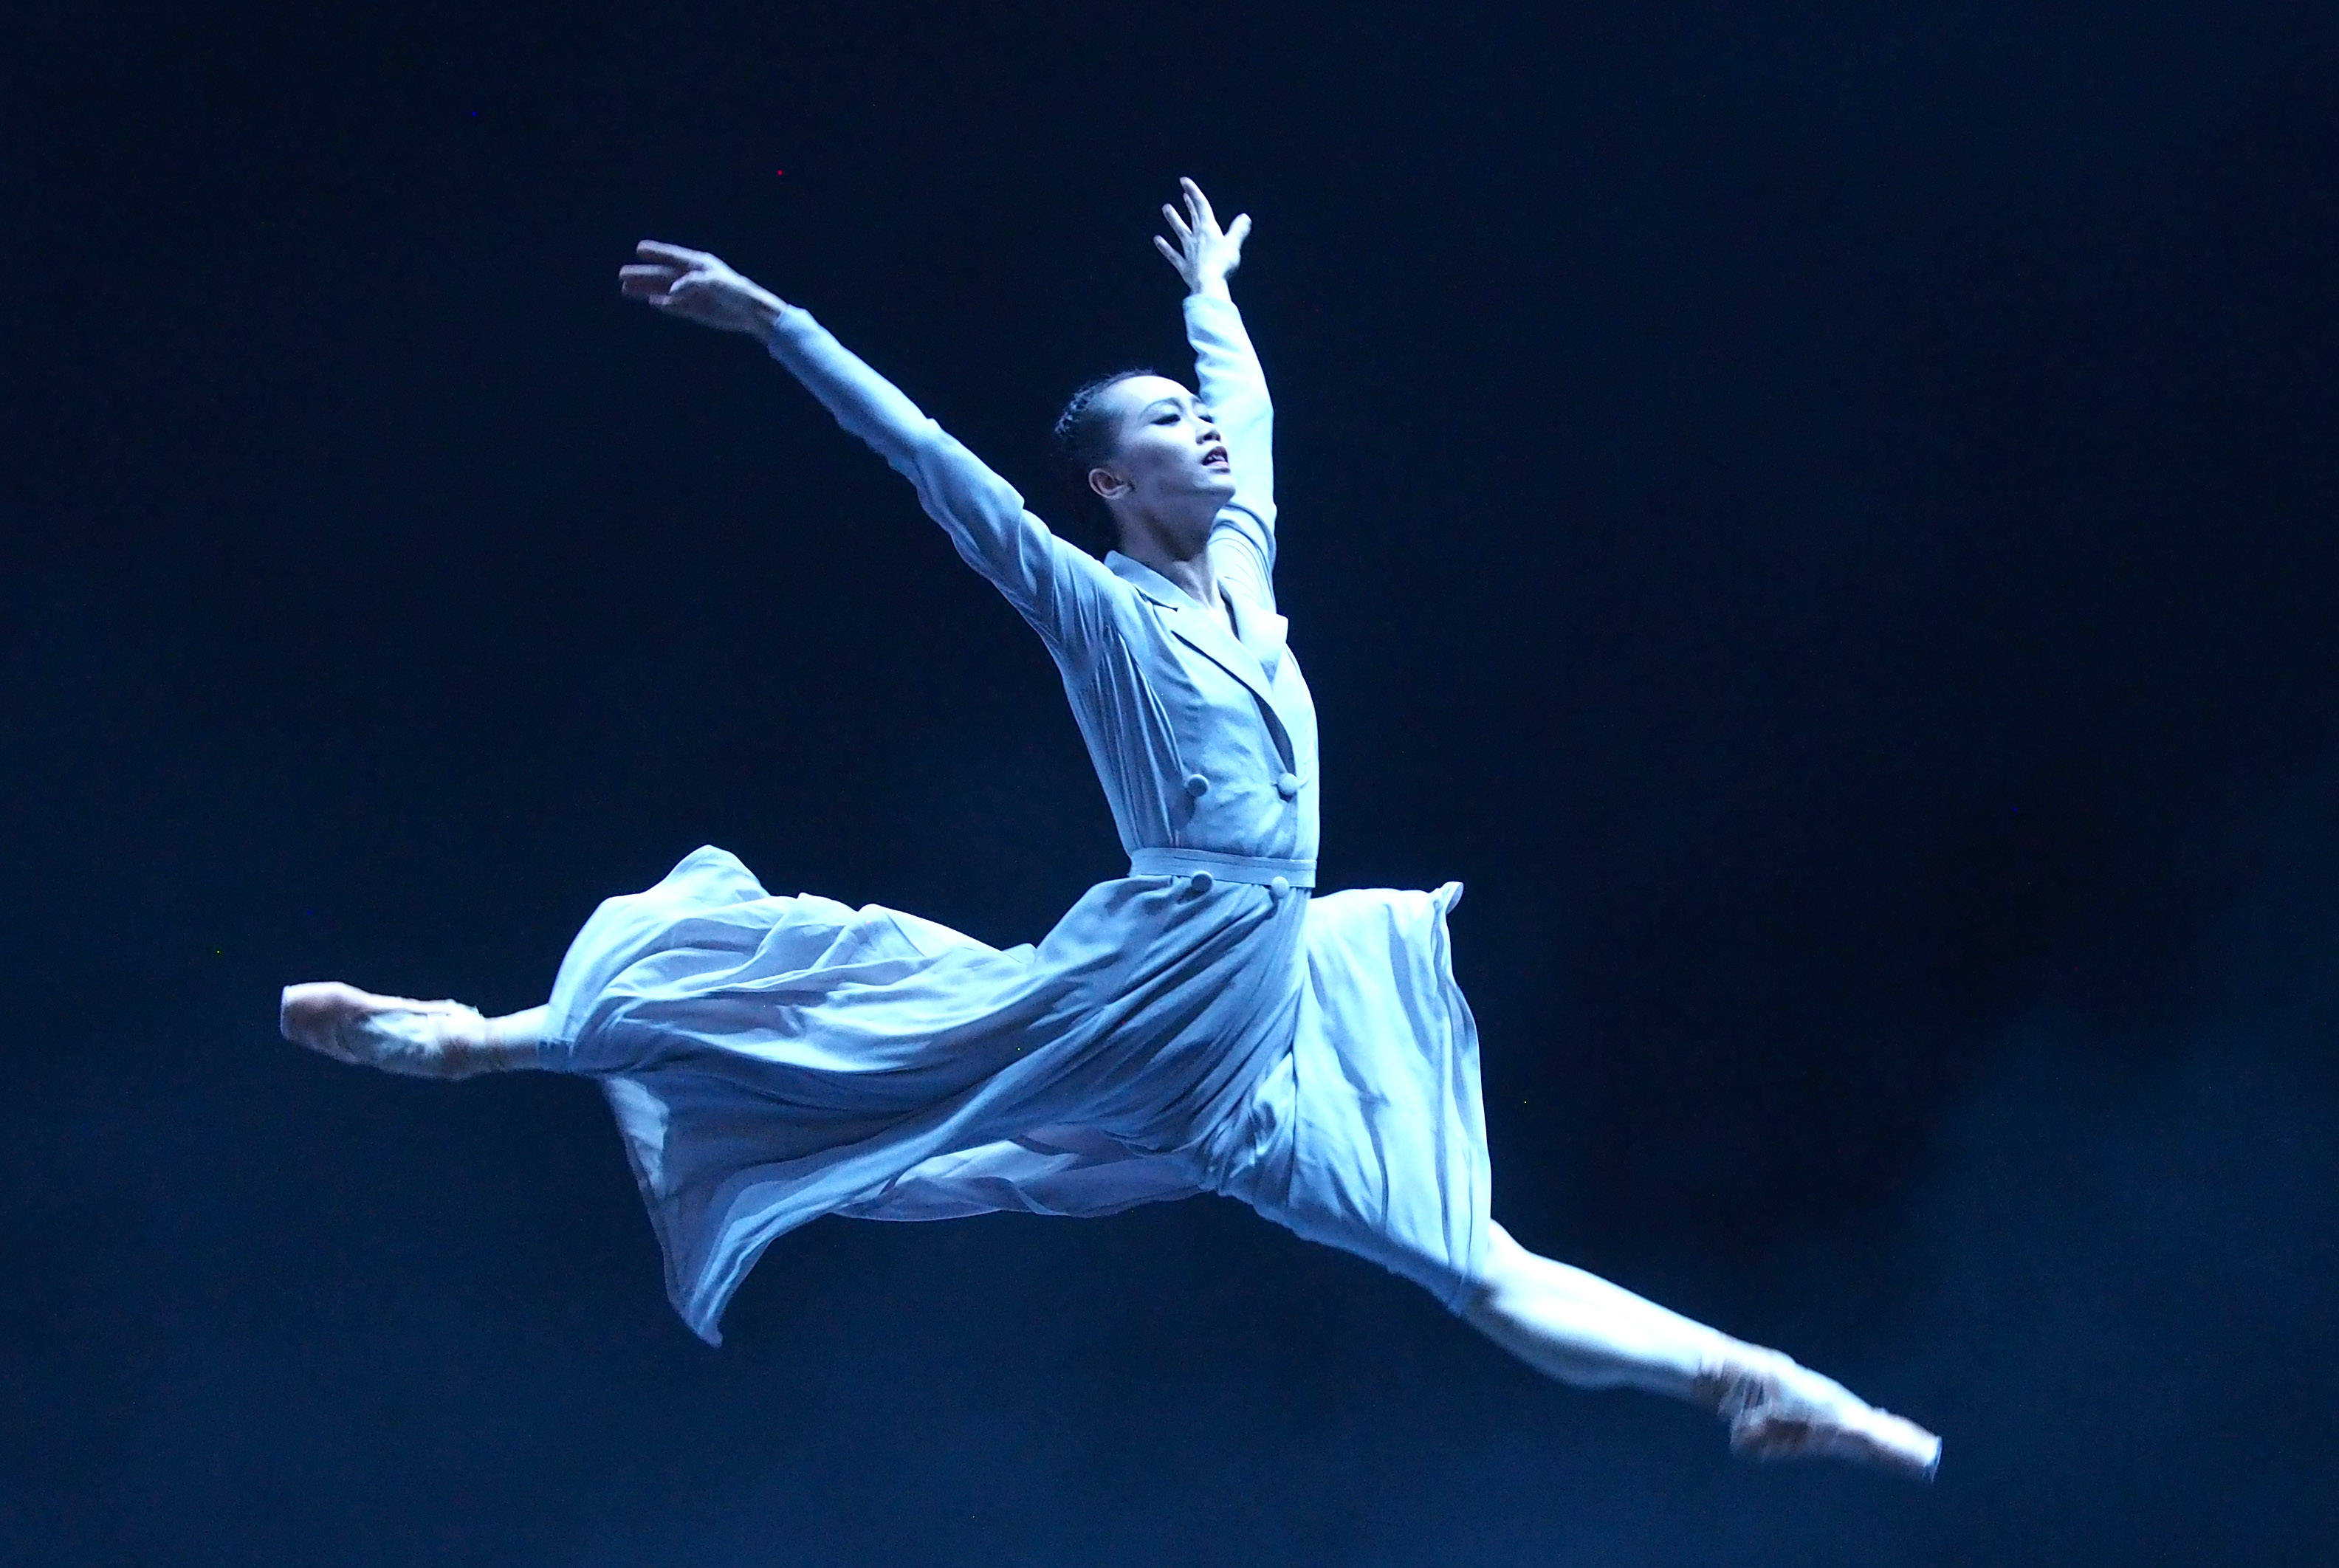 任珑 摄当日,上海芭蕾舞团的现代芭蕾作品《绽放》在上海国际舞蹈中心